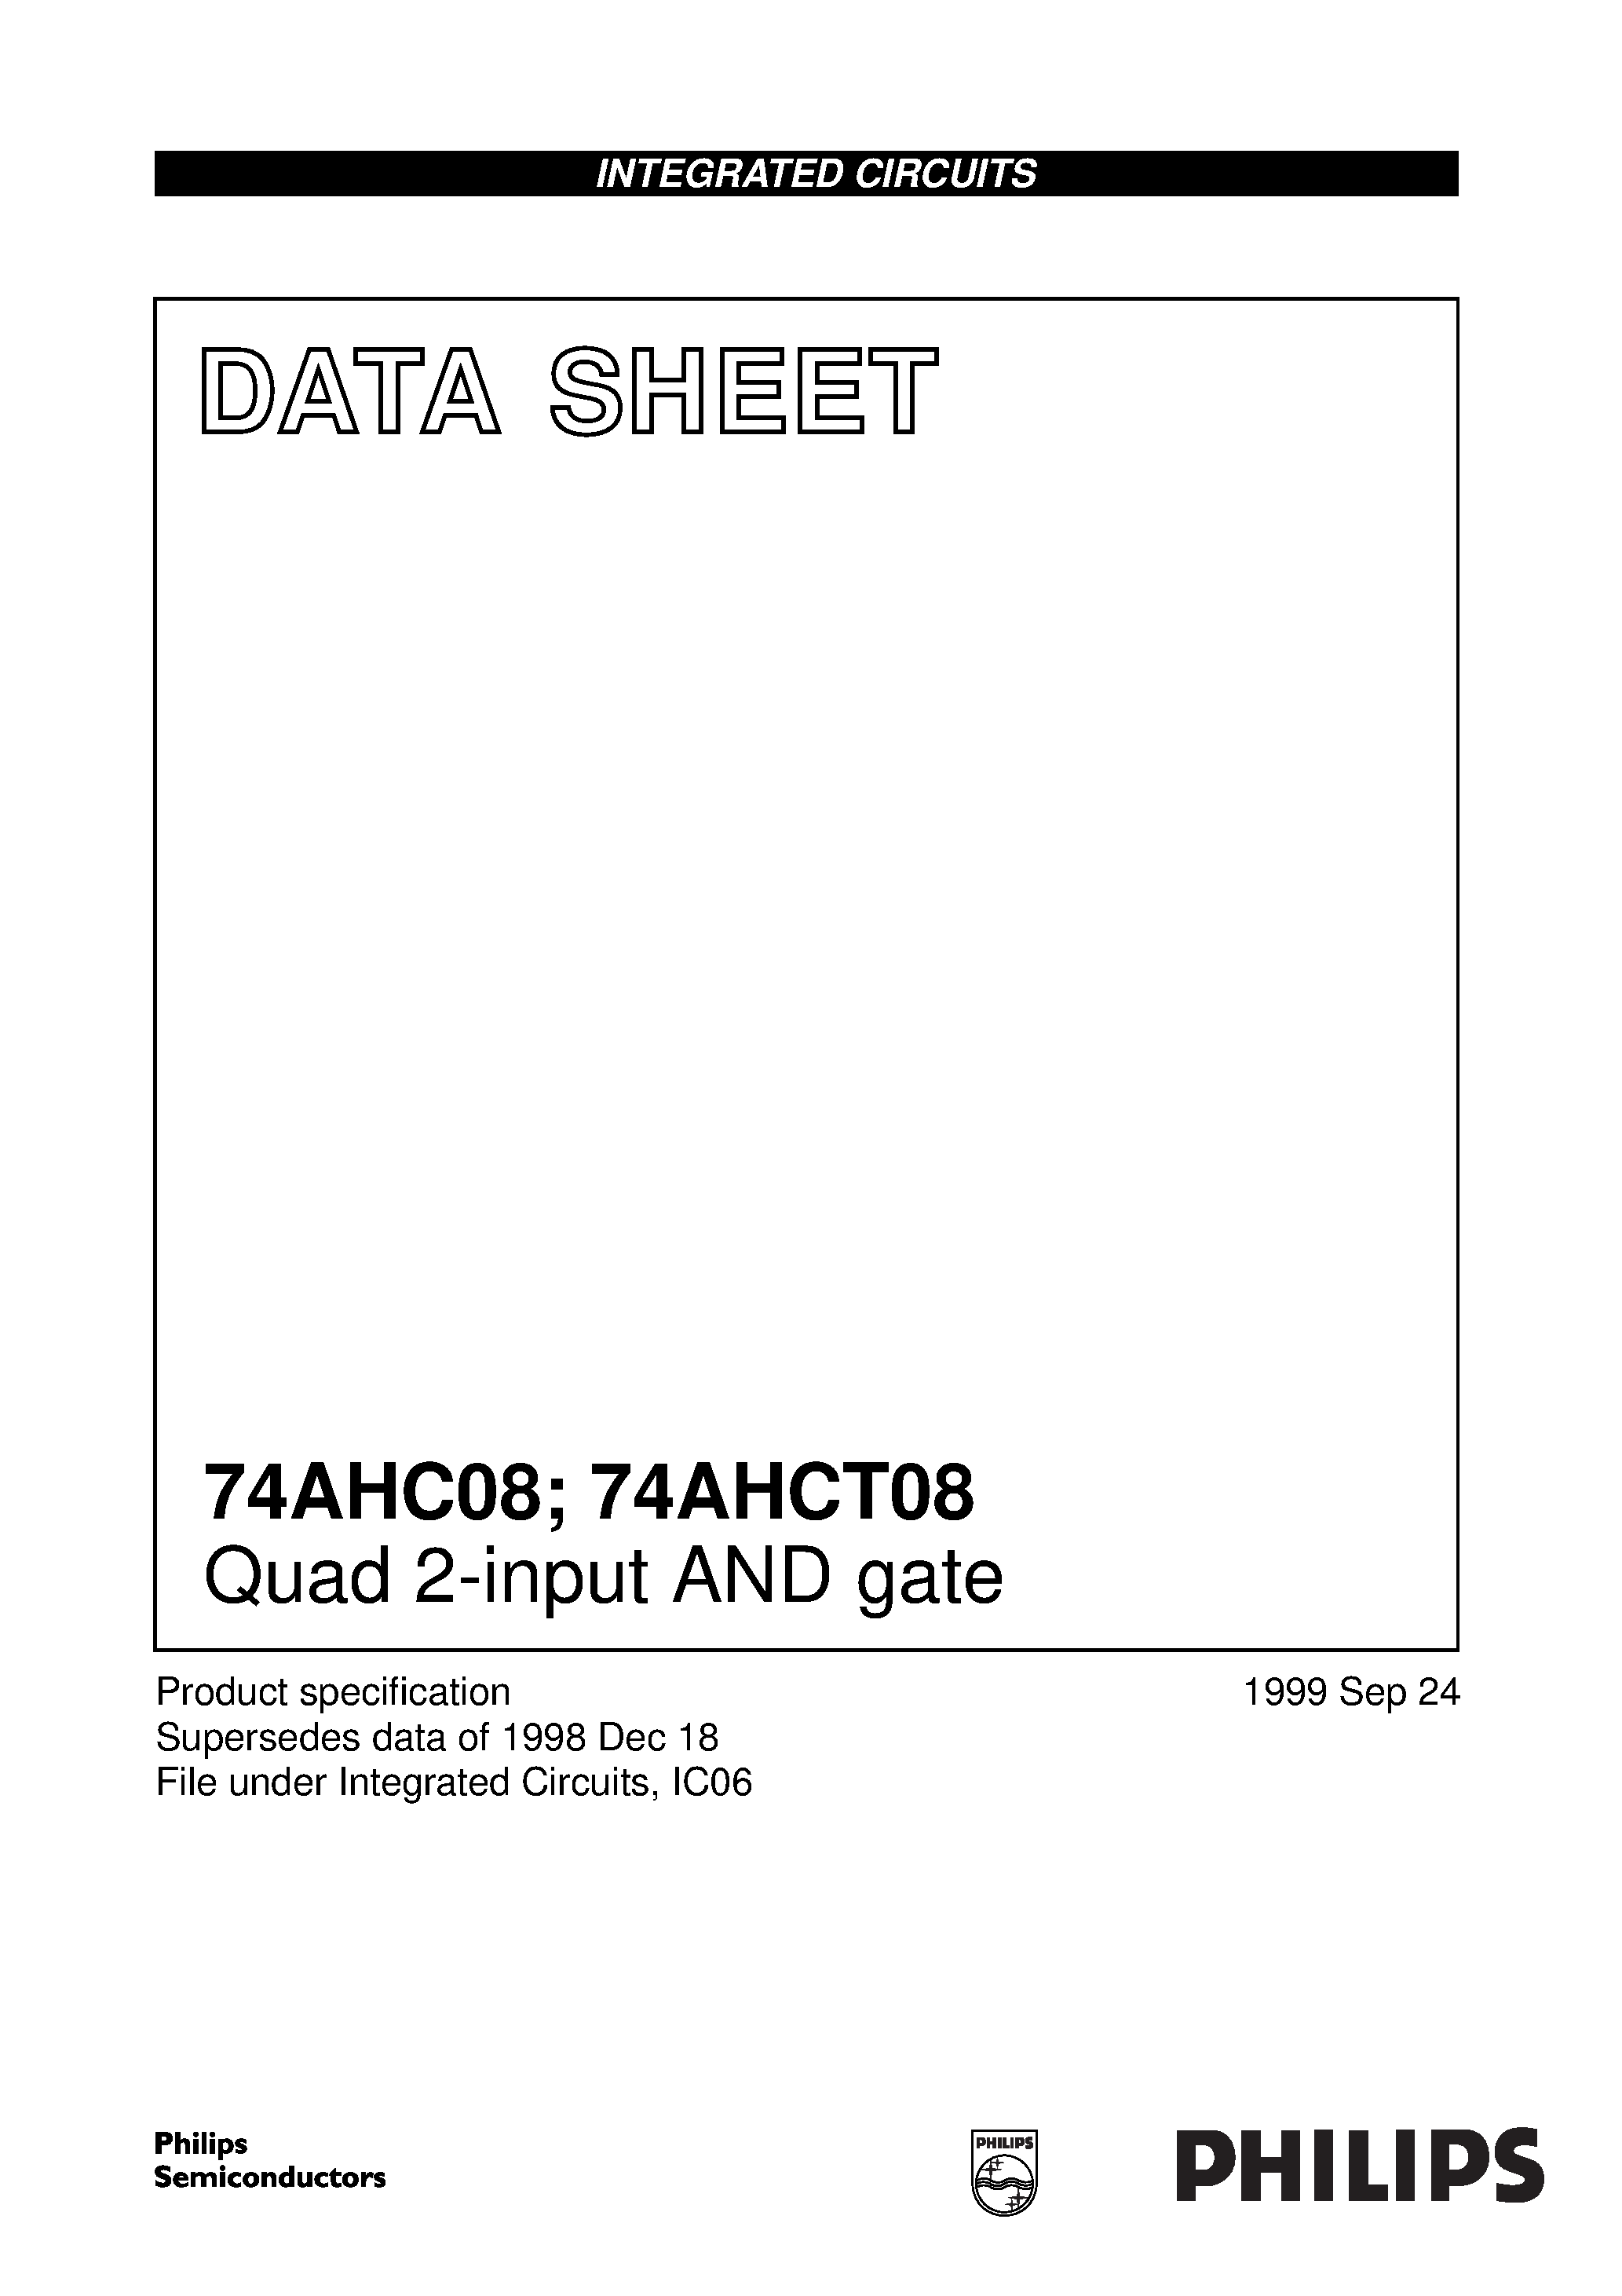 Даташит 74AHC08D - Quad 2-input AND gate страница 1